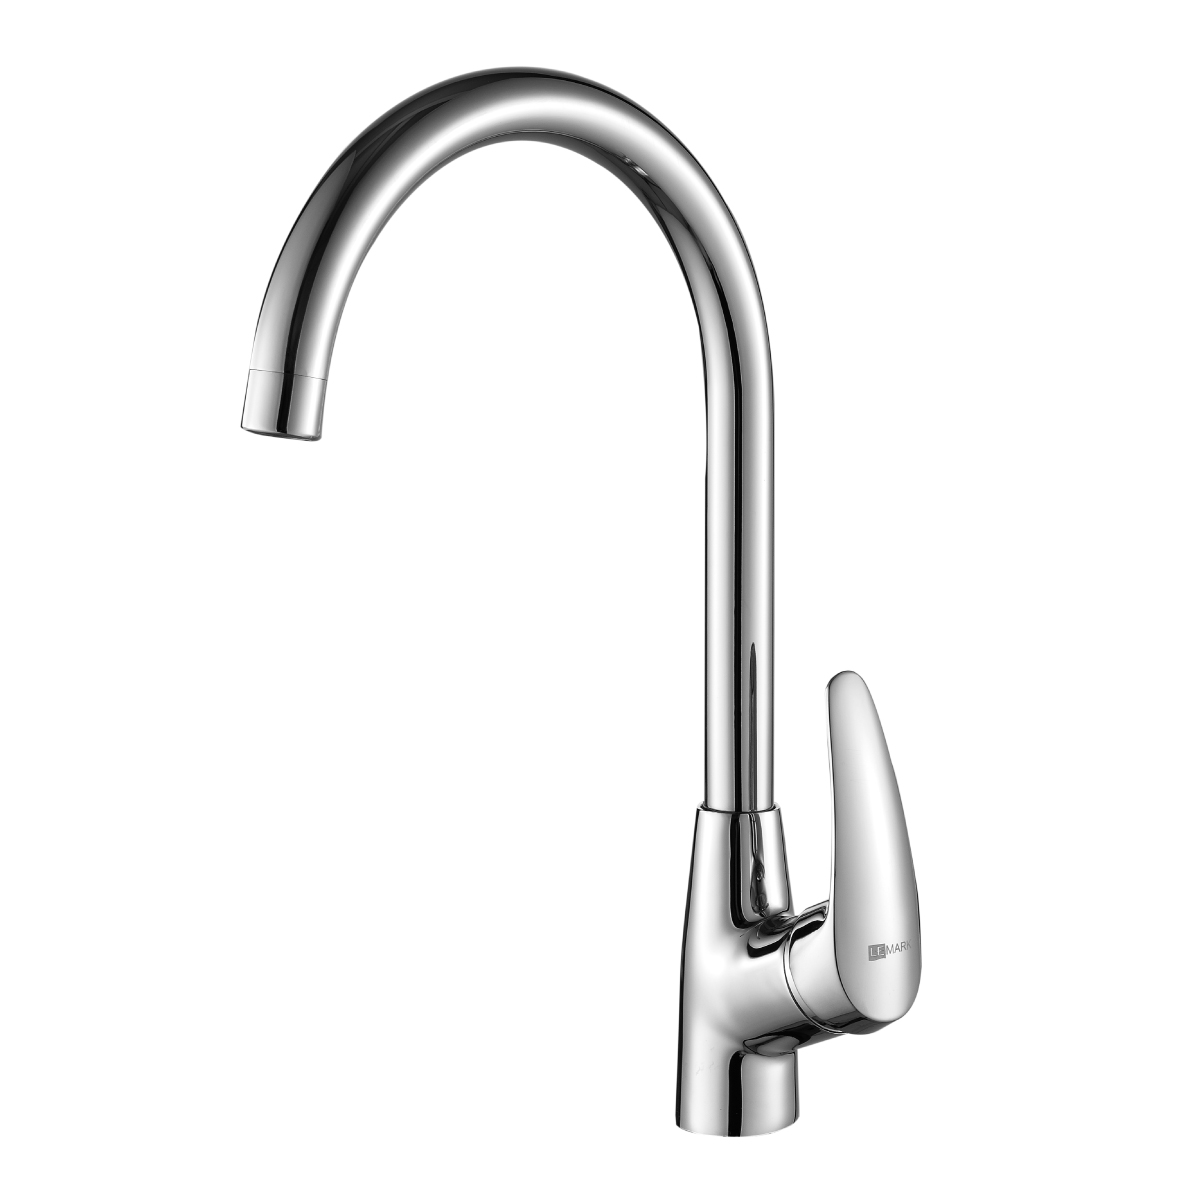 LM0405C Kitchen faucet
with swivel spout